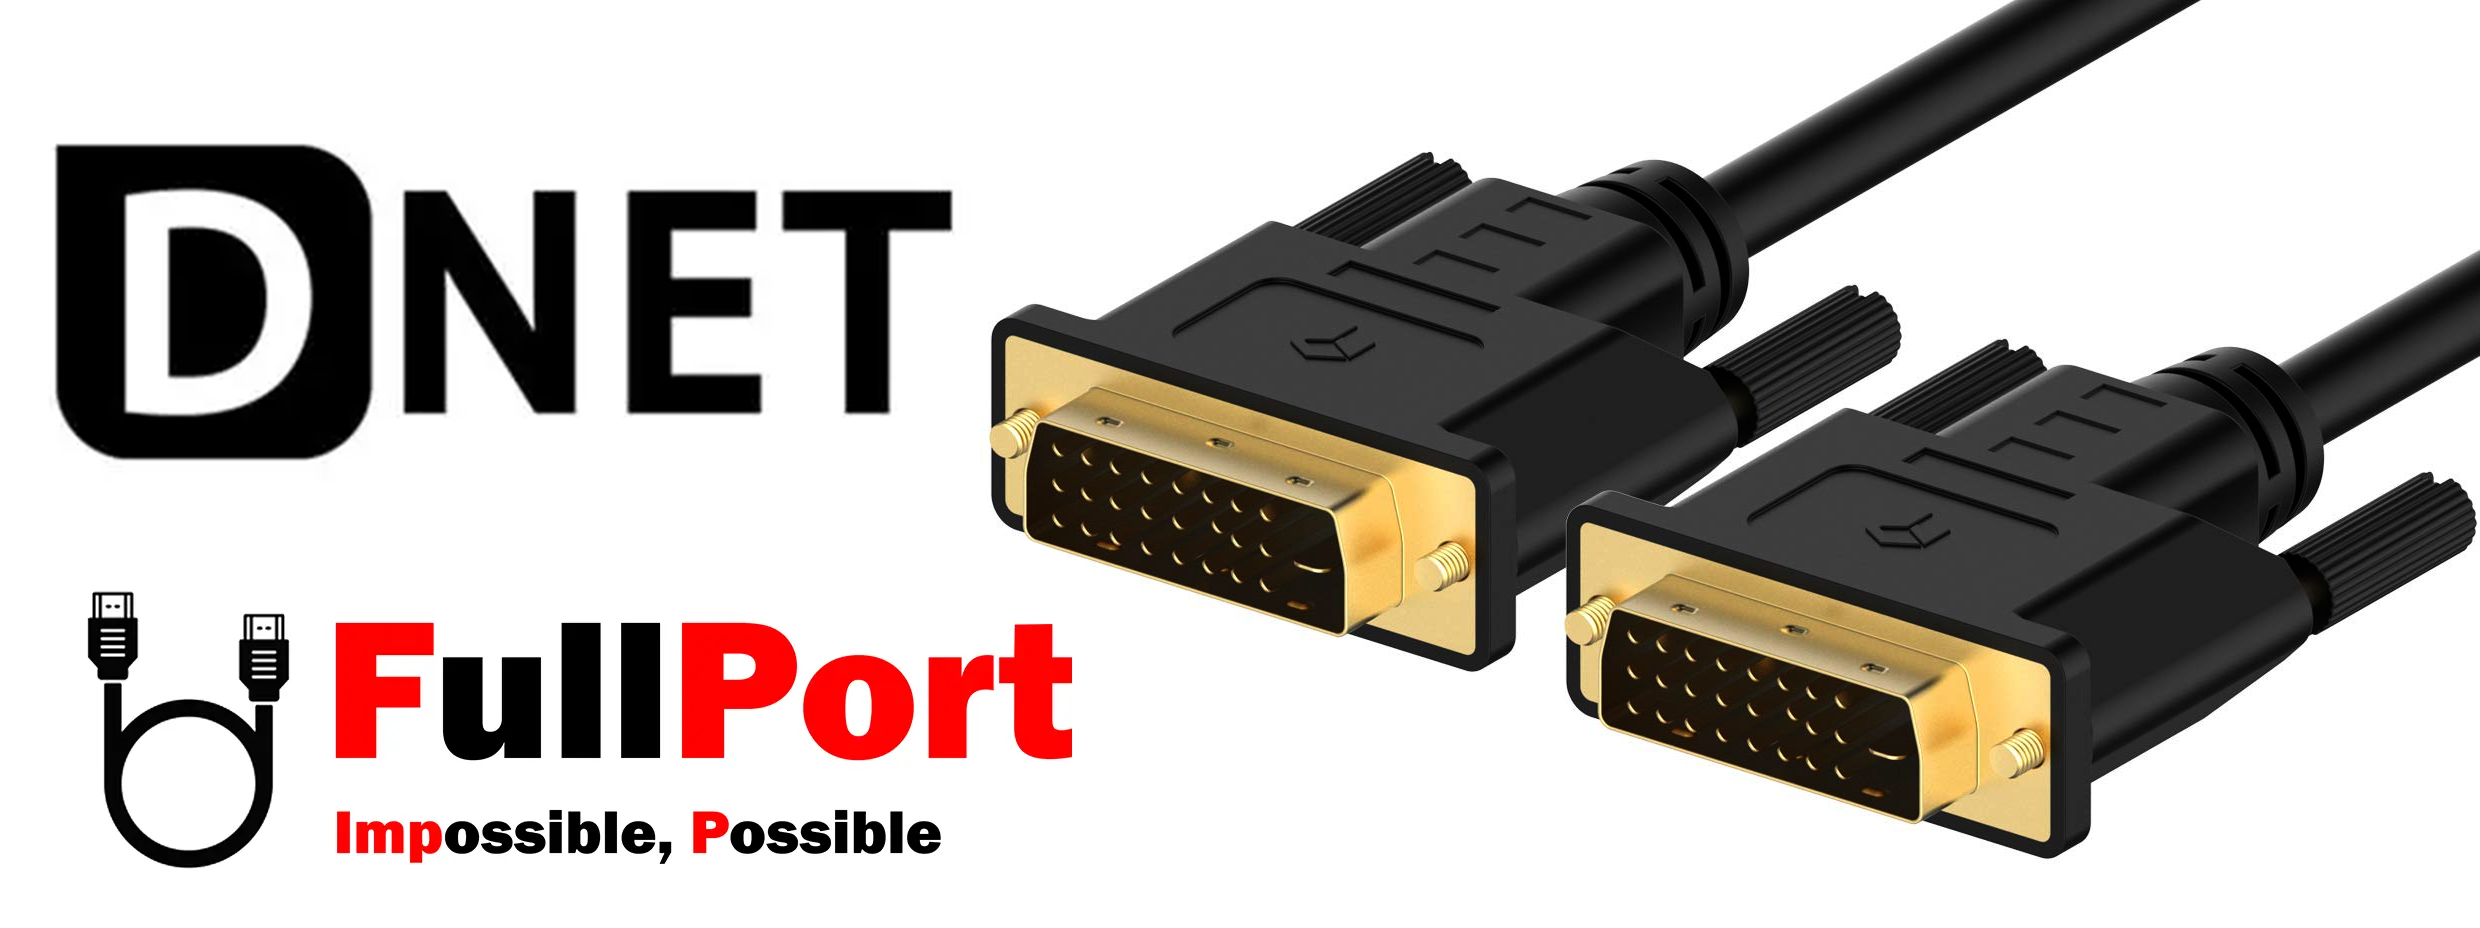 خرید اینترنتی کابل DVI-D (24+1) Dual Link دی نت | D-NET با گارانتی تست و تضمین اصالت کالا از فروشگاه اینترنتی فول پورت